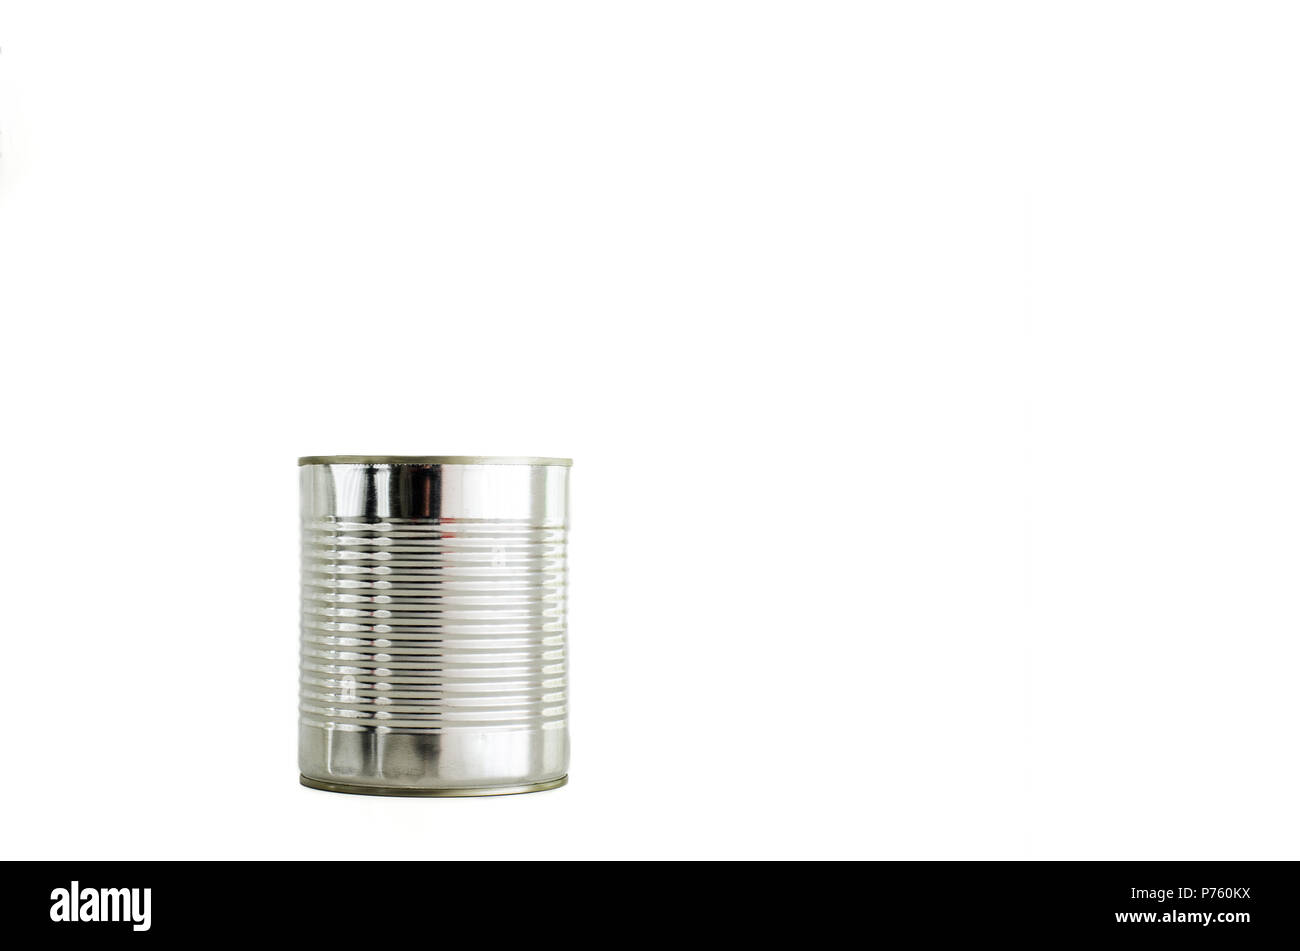 Generico cilindriche luminose stagno alluminio può essere isolata contro uno sfondo bianco Foto Stock